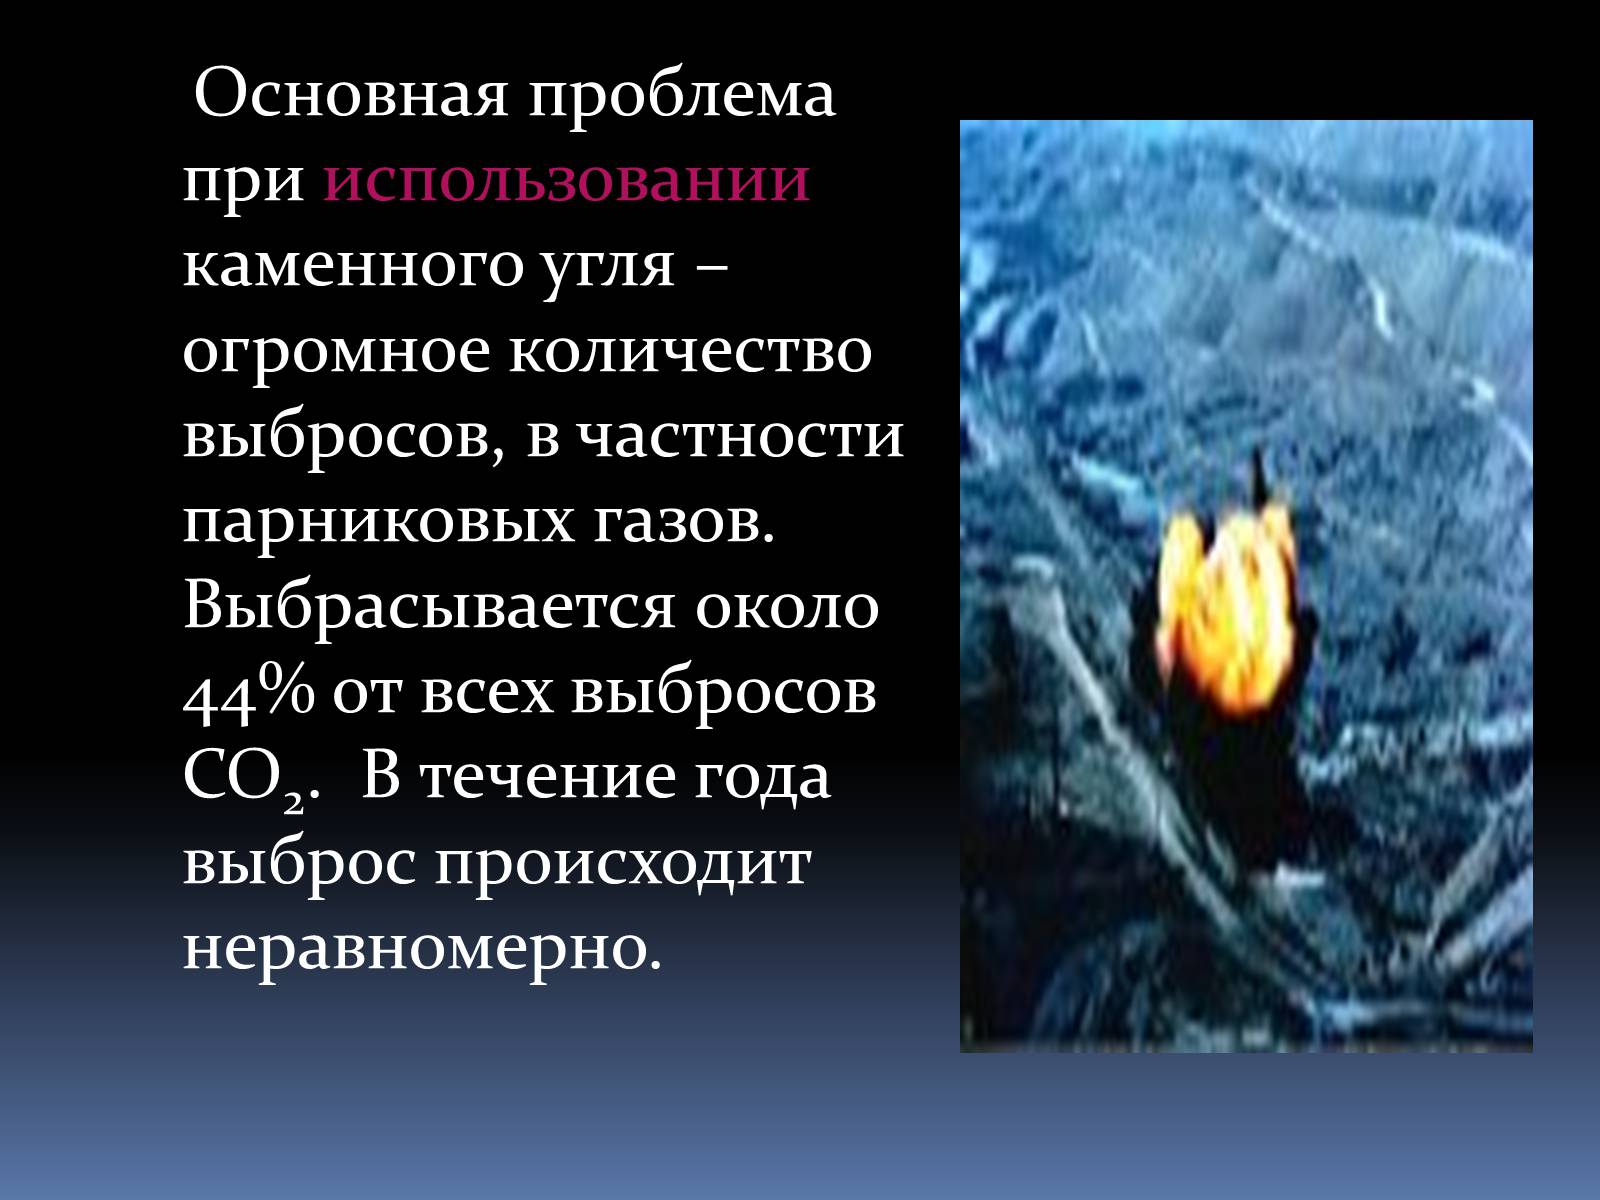 Негативное влияние угля на окружающую среду. Экологические проблемы угля. Экологические проблемы каменного угля. Экологические проблемы добычи каменного угля. Проблемы использования угля.